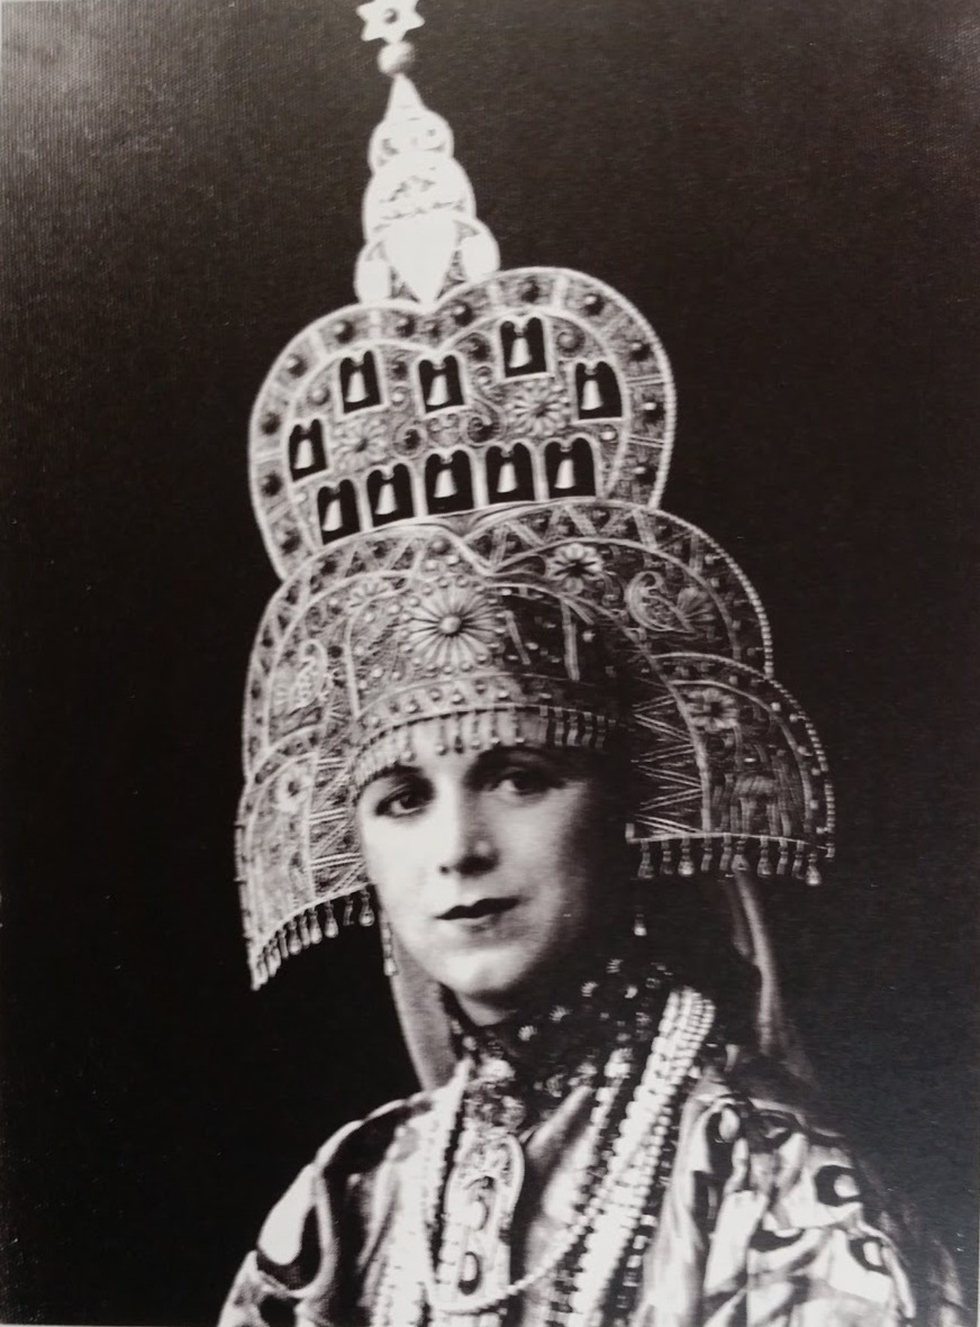 מלכת היופי הראשונה רחל בלומנפלד, אסתר המלכה החמישית 1931  (מתוך אוסף המוזיאון לתולדות תל-אביב-יפו) (מתוך אוסף המוזיאון לתולדות תל-אביב-יפו)